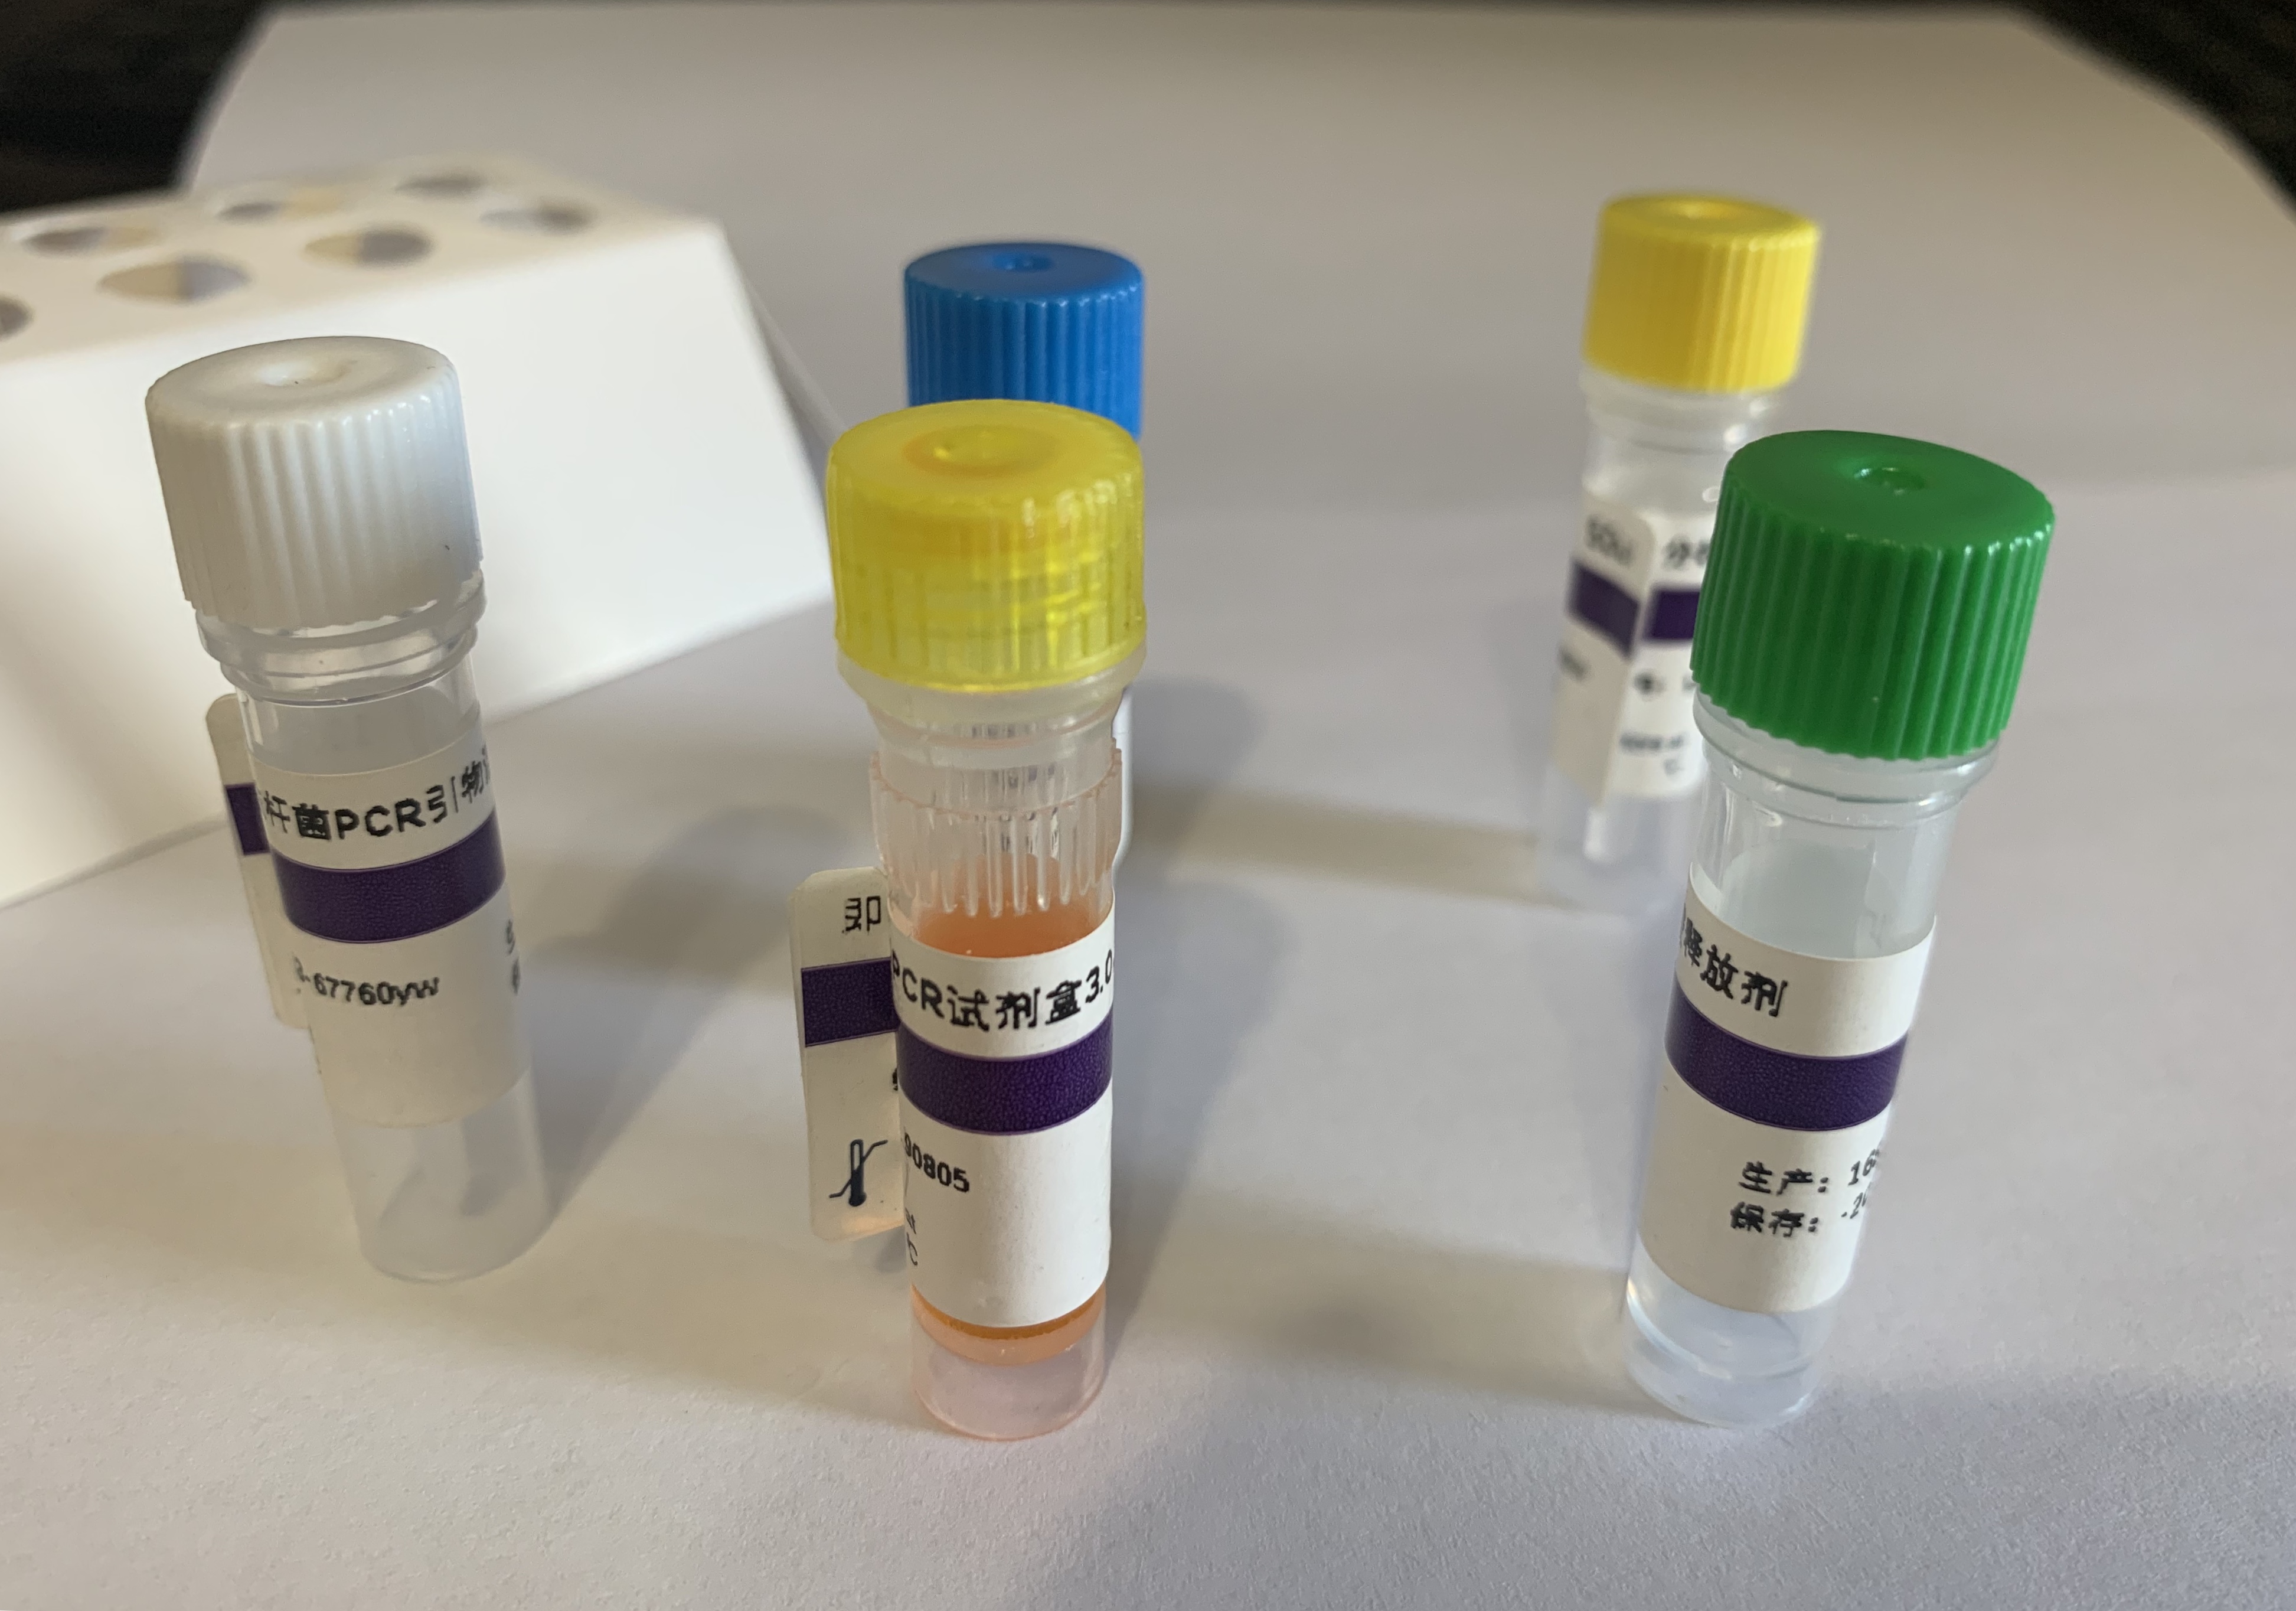 嵴病毒探针法荧光定量RT-PCR试剂盒